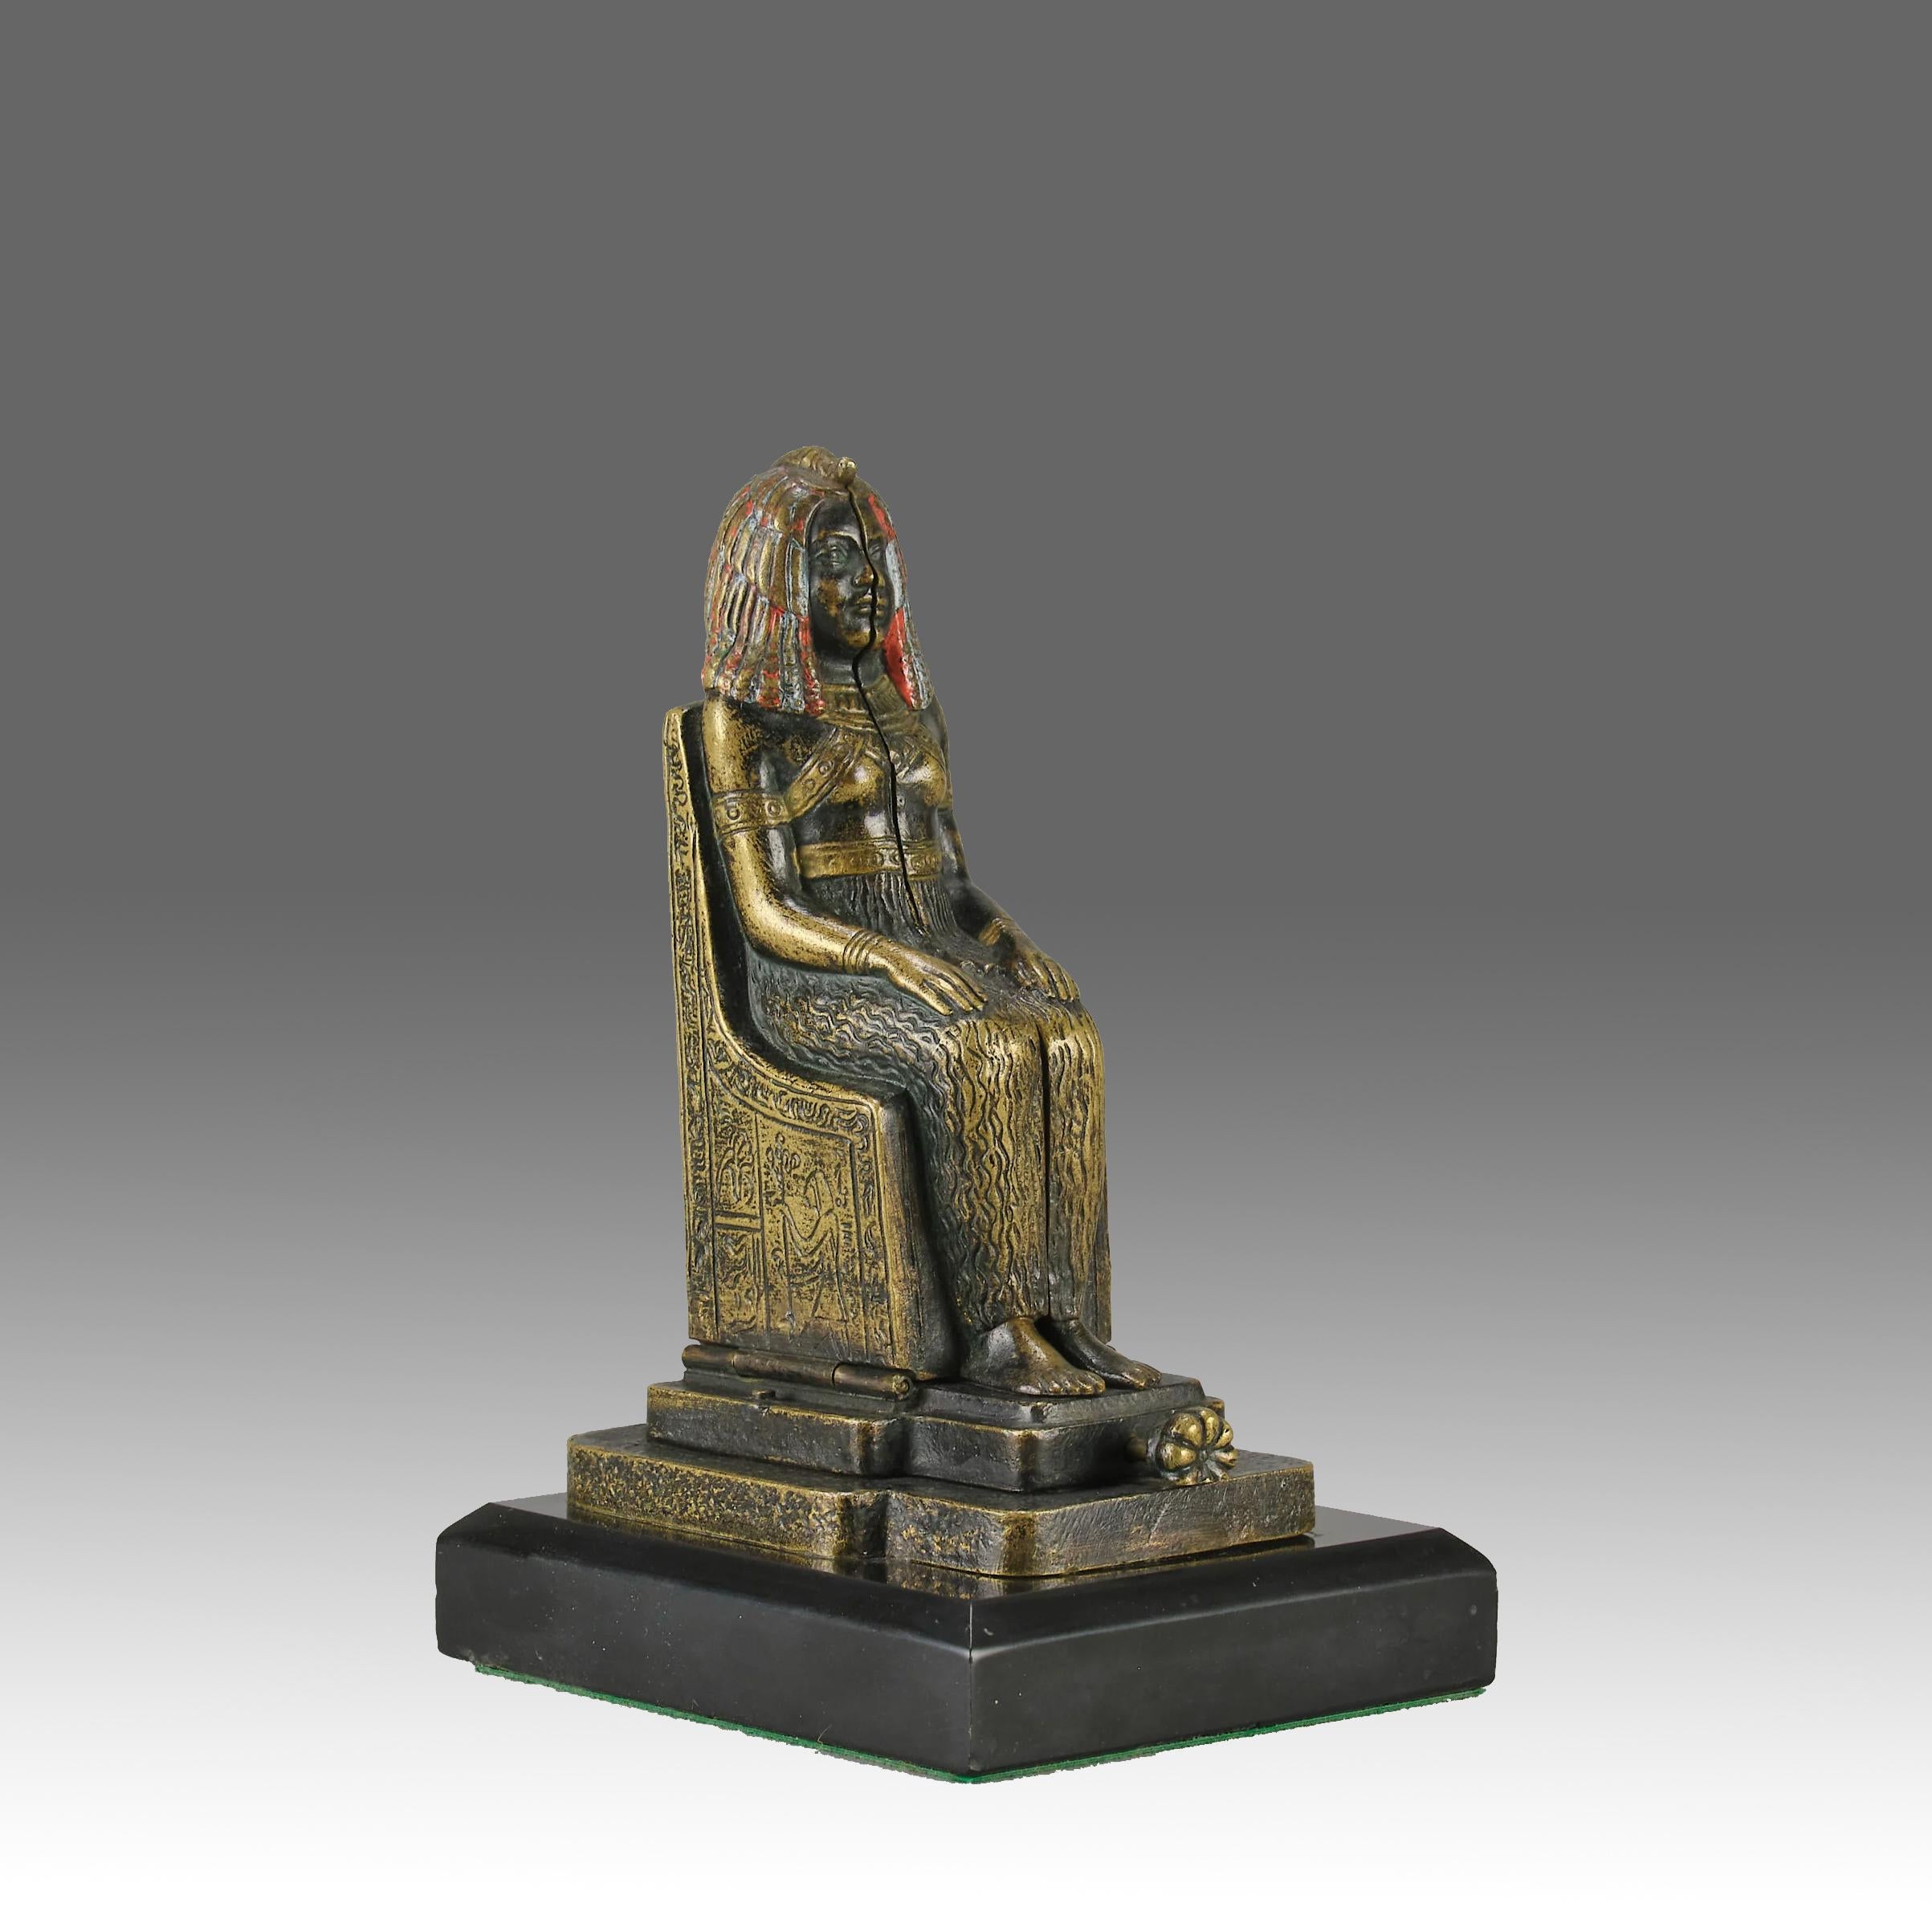 Amusante figurine en bronze autrichien peinte à froid au début du 20e siècle, représentant une divinité égyptienne antique assise, dont les charnières révèlent une beauté érotique aux belles couleurs dorées, estampillée Bergman 'B', dans un vase